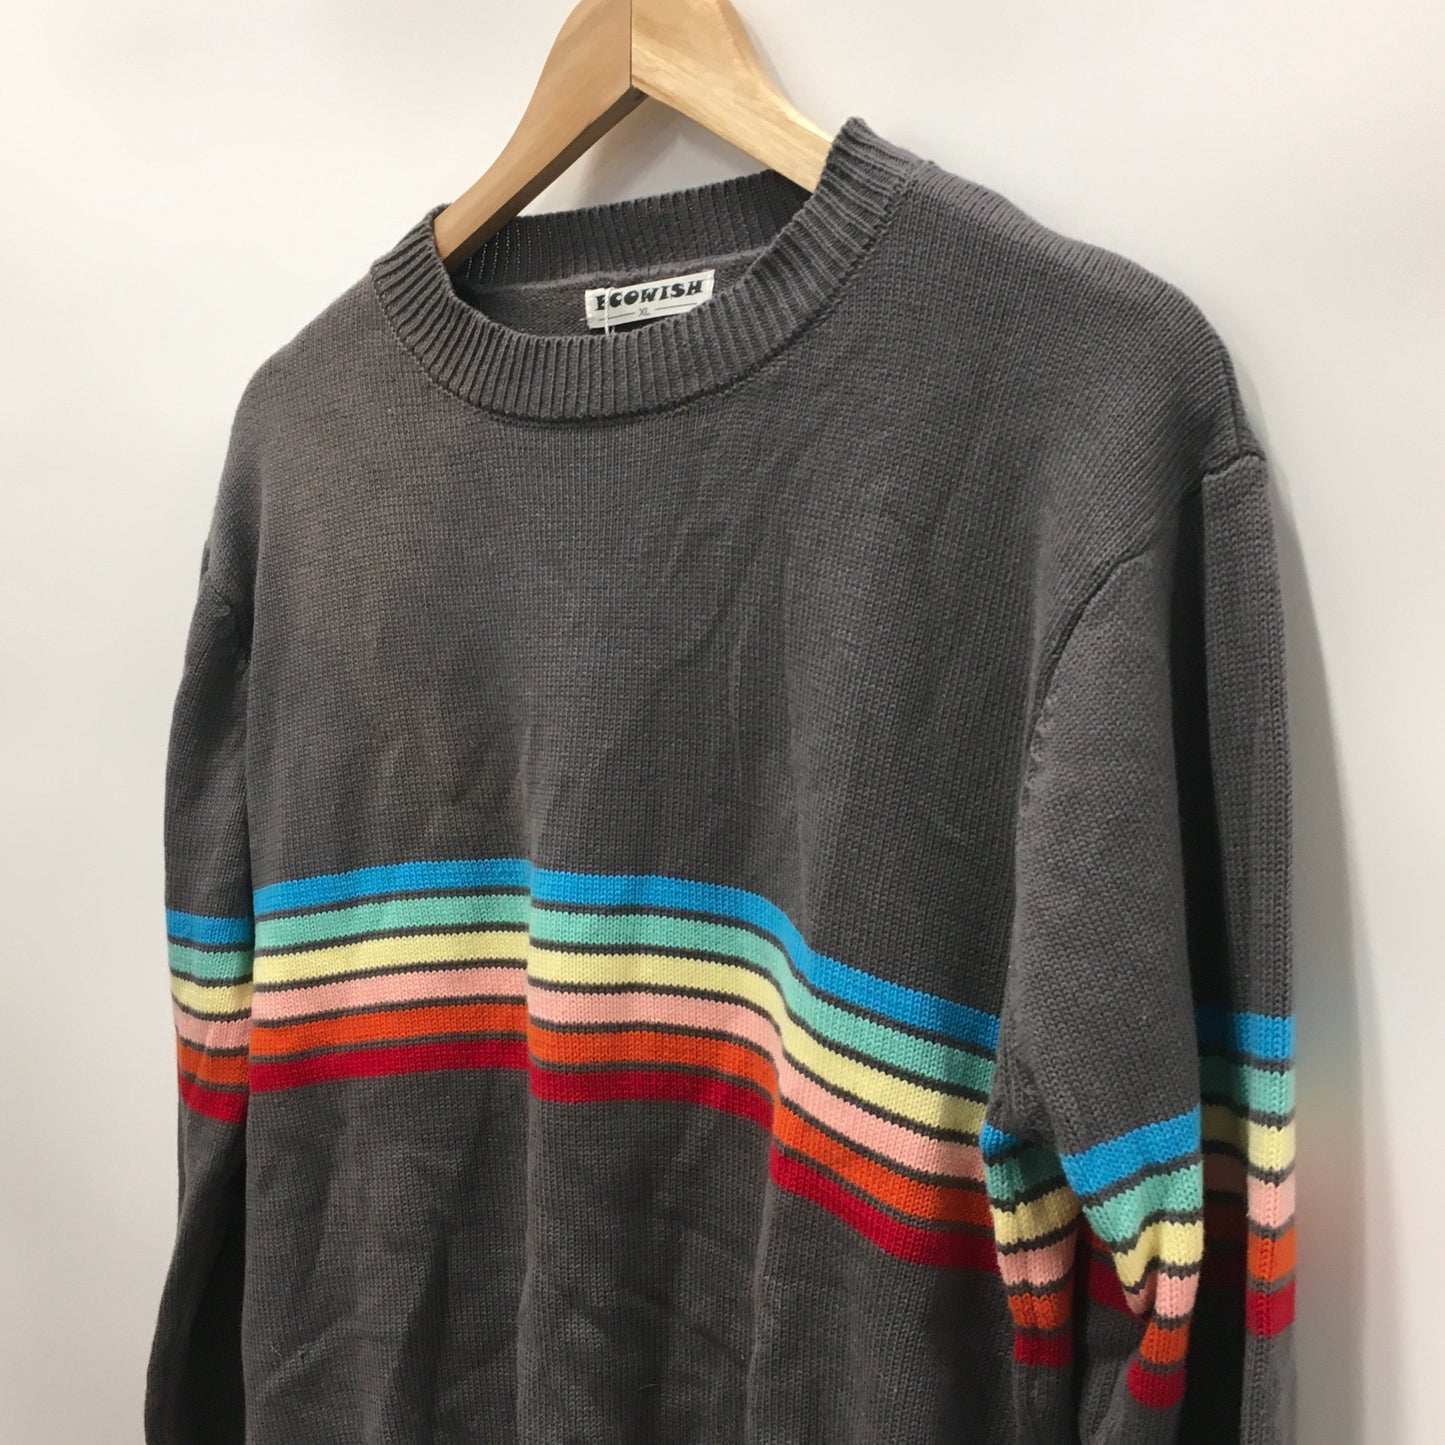 Grey Sweater Ecowish, Size Xl